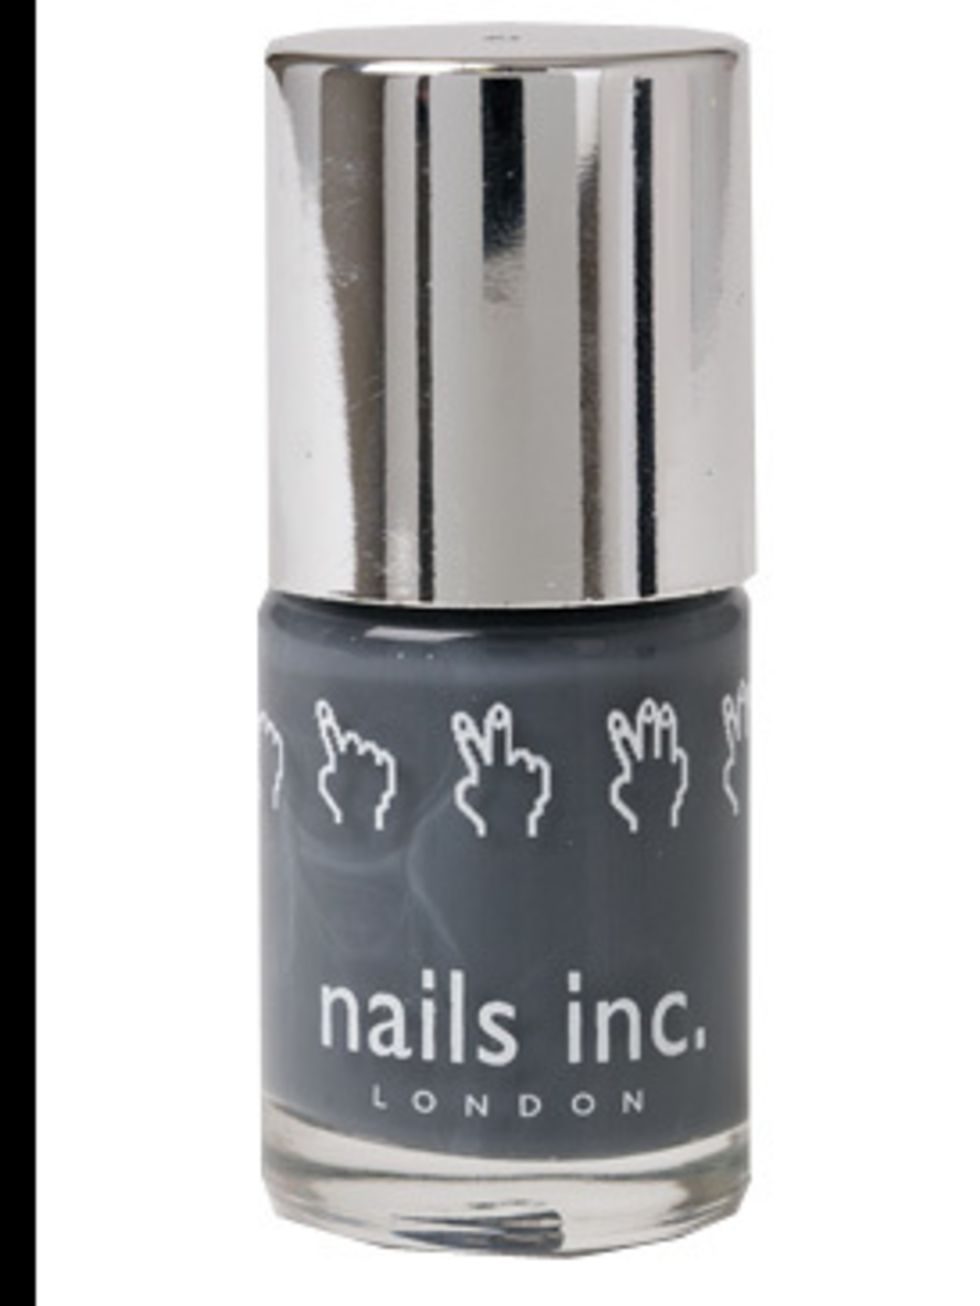 <p>Nail Varnish, £10.50 at <a href="http://www.nailsinc.com/Product/379/the-thames-nail-polish">Nails Inc</a></p>